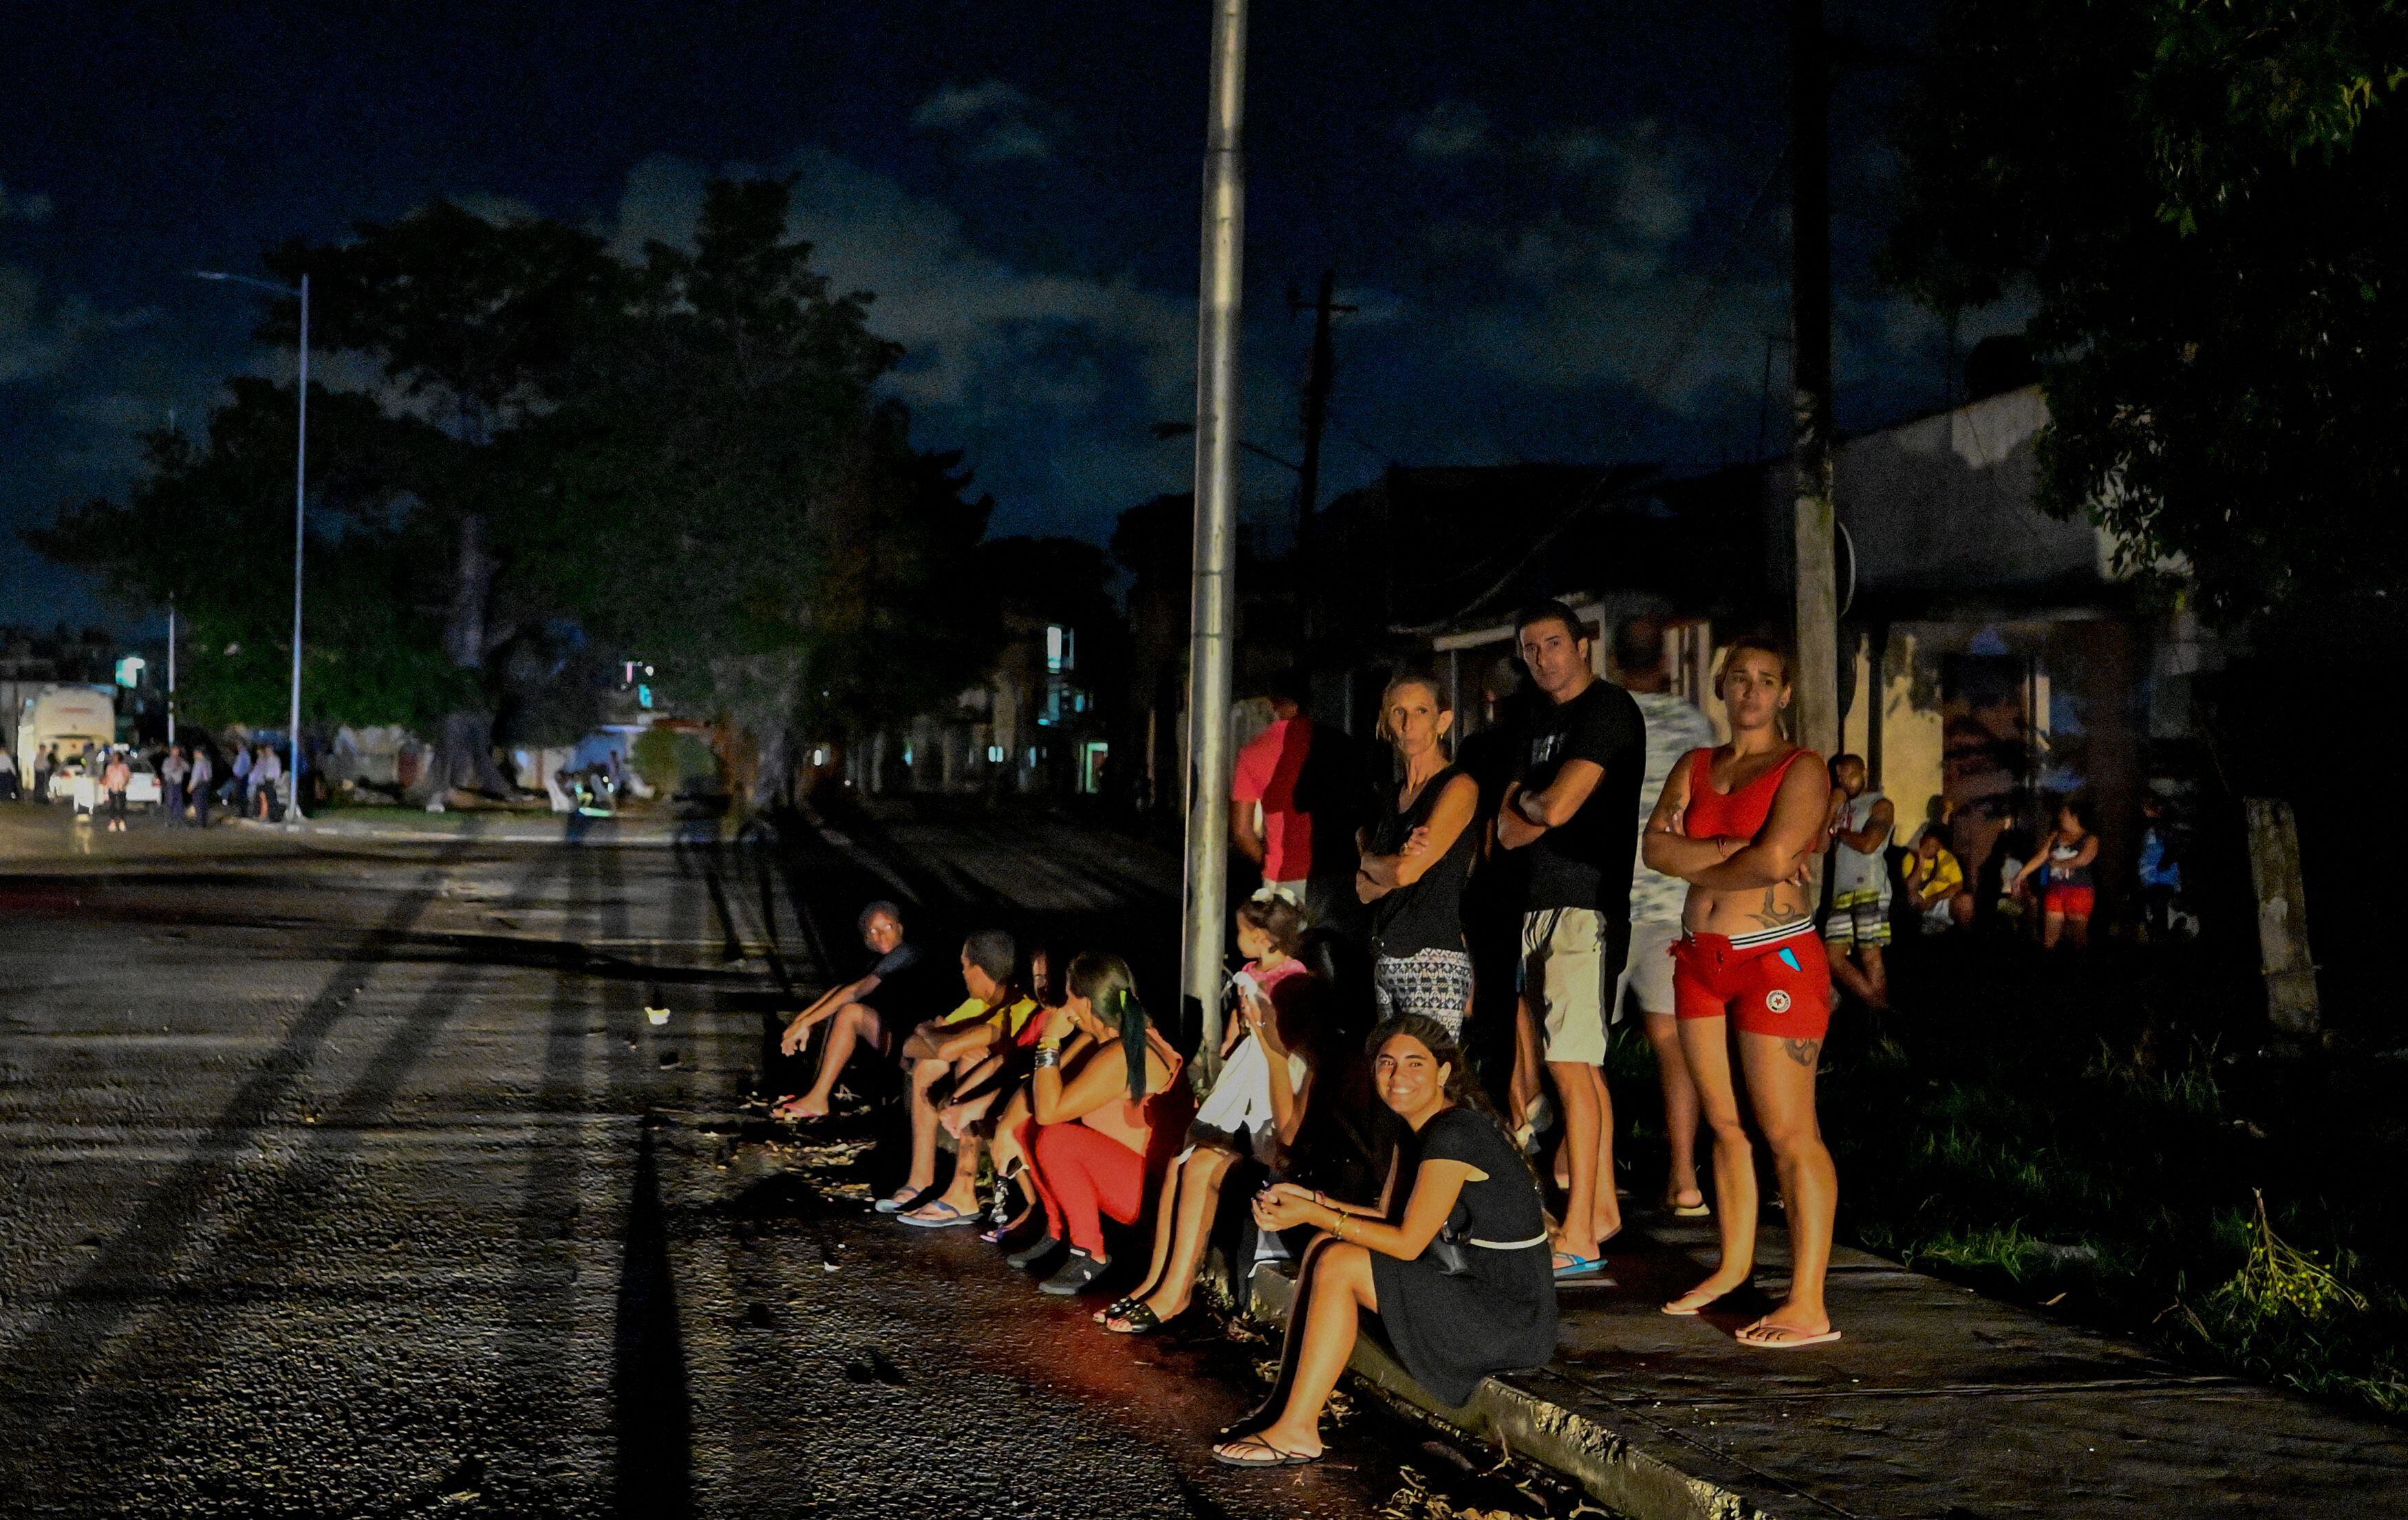 Residentes se reúnen afuera en un vecindario en medio de un apagón eléctrico prolongado después del huracán Ian en La Habana el 30 de septiembre de 2022. El huracán Ian sumió a toda Cuba en la oscuridad después de derribar la red eléctrica de la isla.